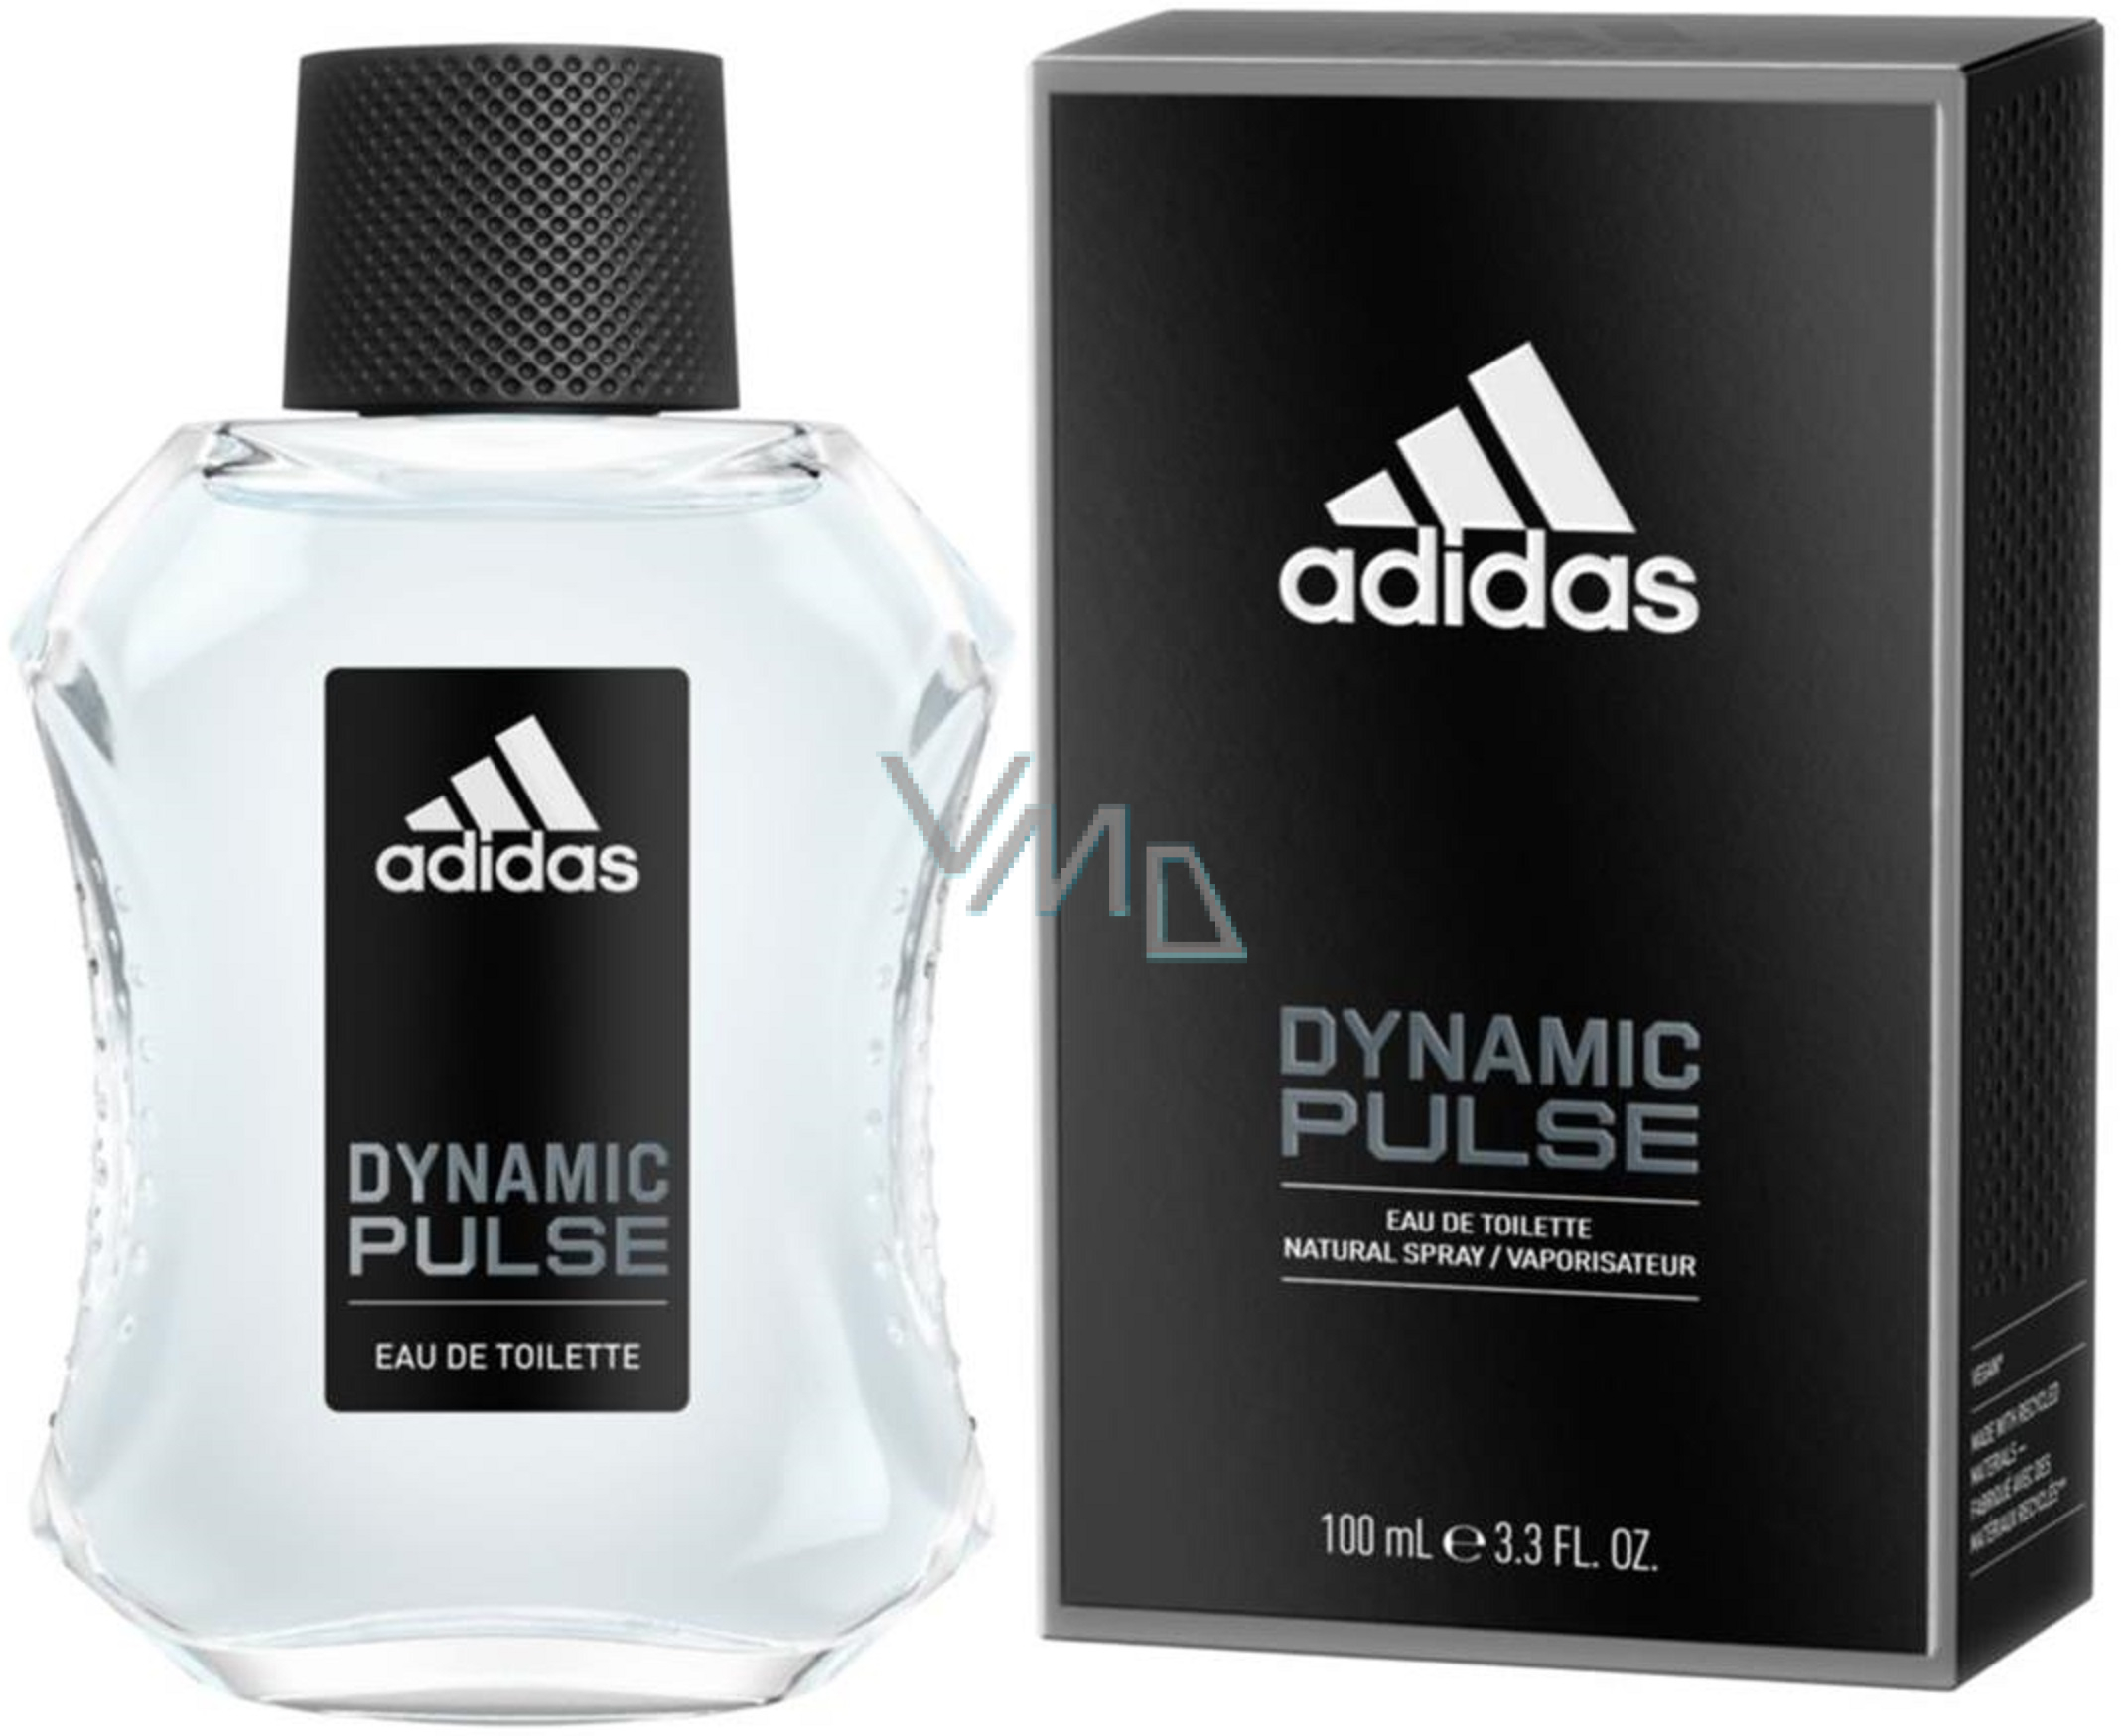 Adidas Pulse Eau de Toilette for Men 100 ml - VMD parfumerie - drogerie